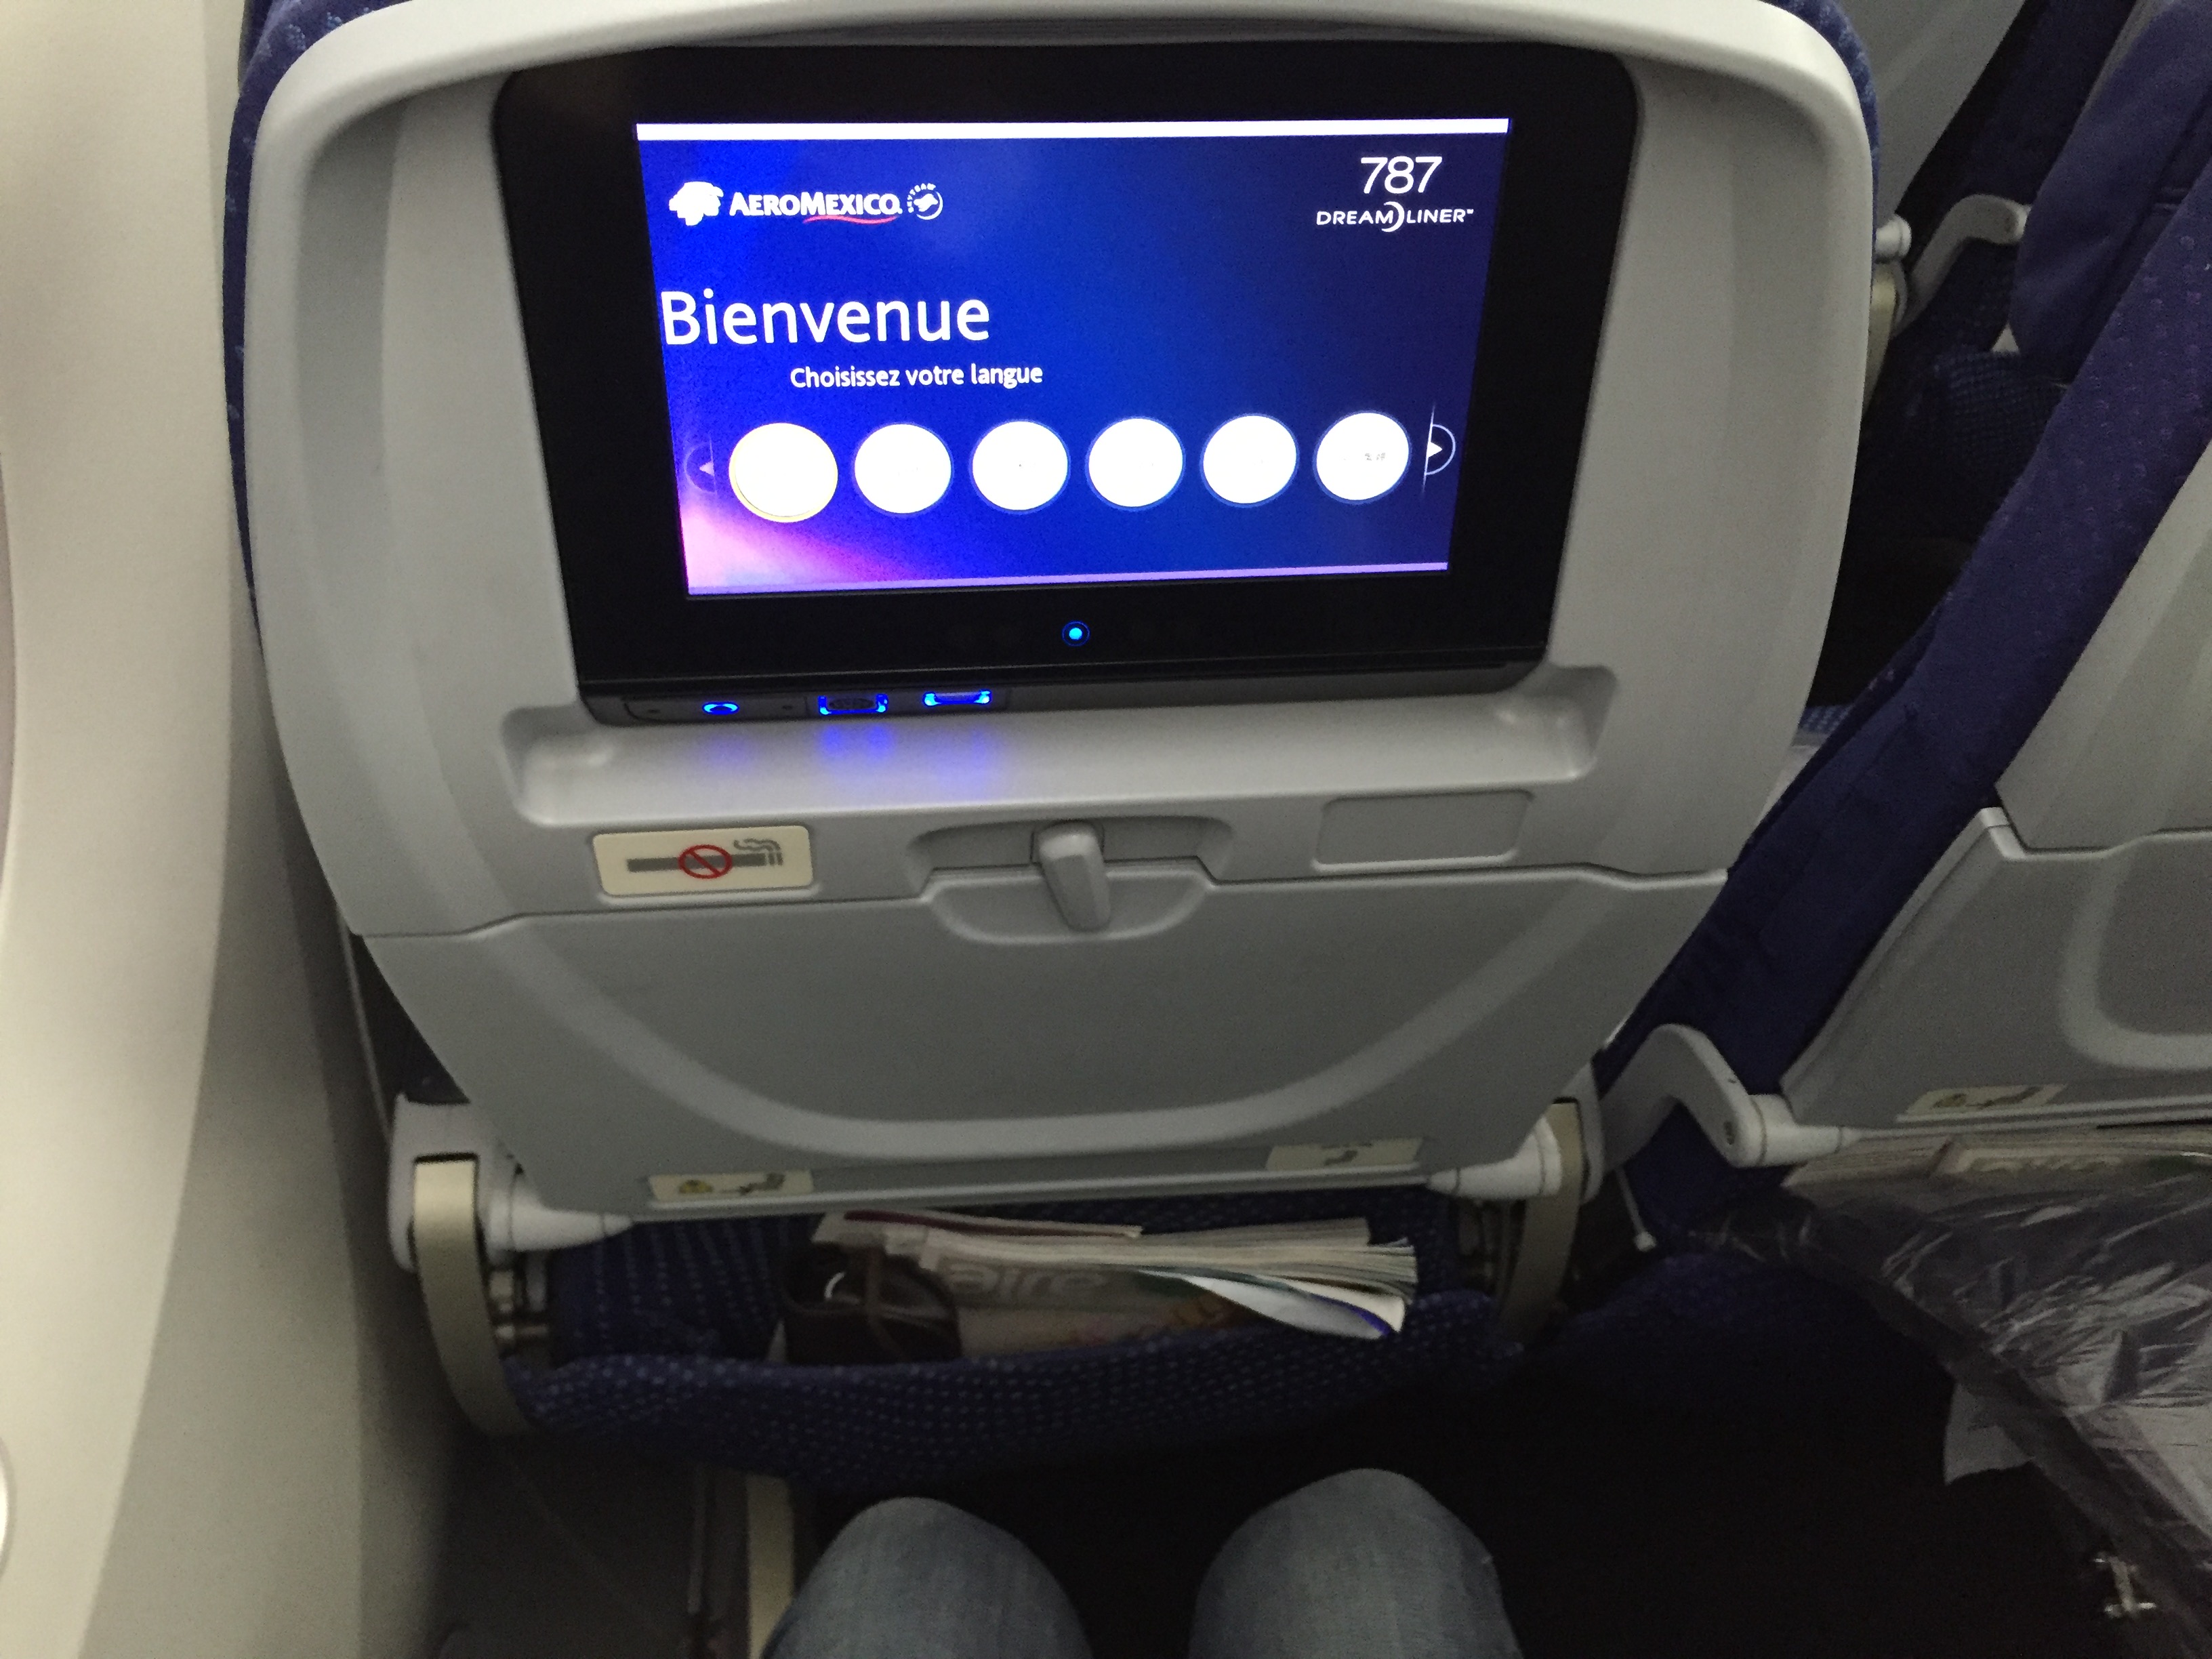 El 787 Dreamliner, tiene un moderno sistema de entretenimiento a bordo de última generación: El panasonic eXlite